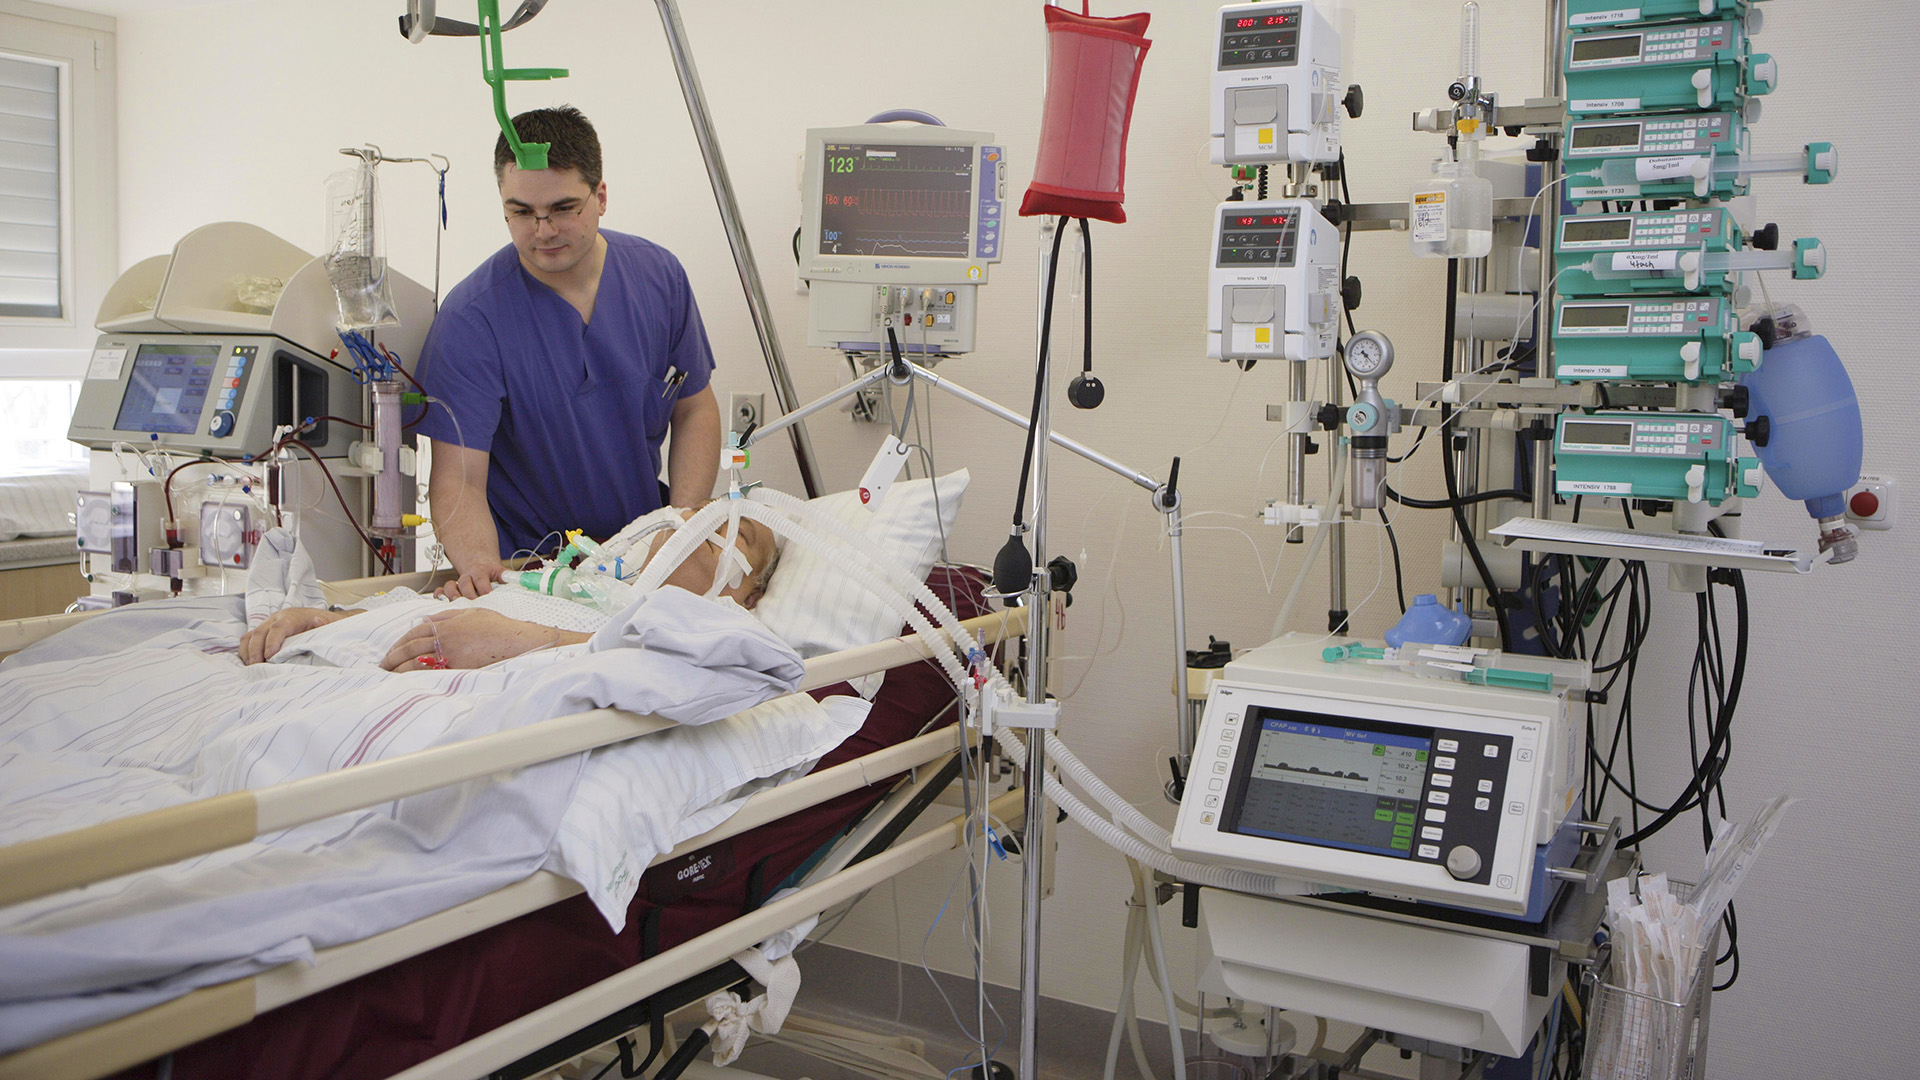 Ein Krankenpfleger während seiner Arbeit auf der Intensivstation in einem Krankenhaus | picture alliance / imageBROKER